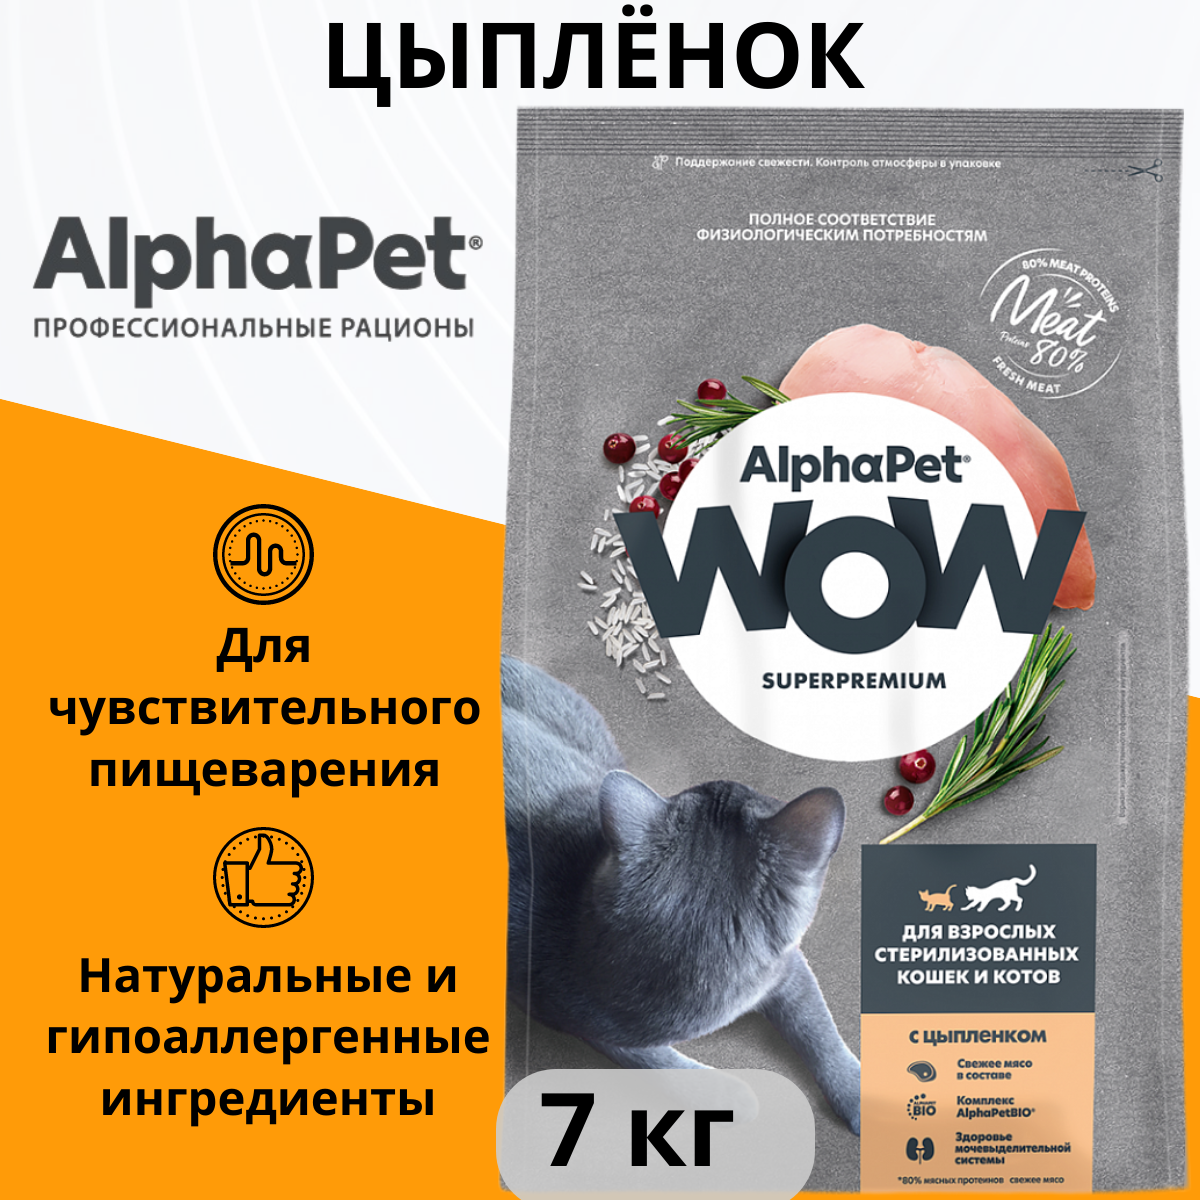 ALPHAPET WOW SUPERPREMIUM 7 кг сухой корм для взрослых стерилизованных кошек и котов c цыпленком